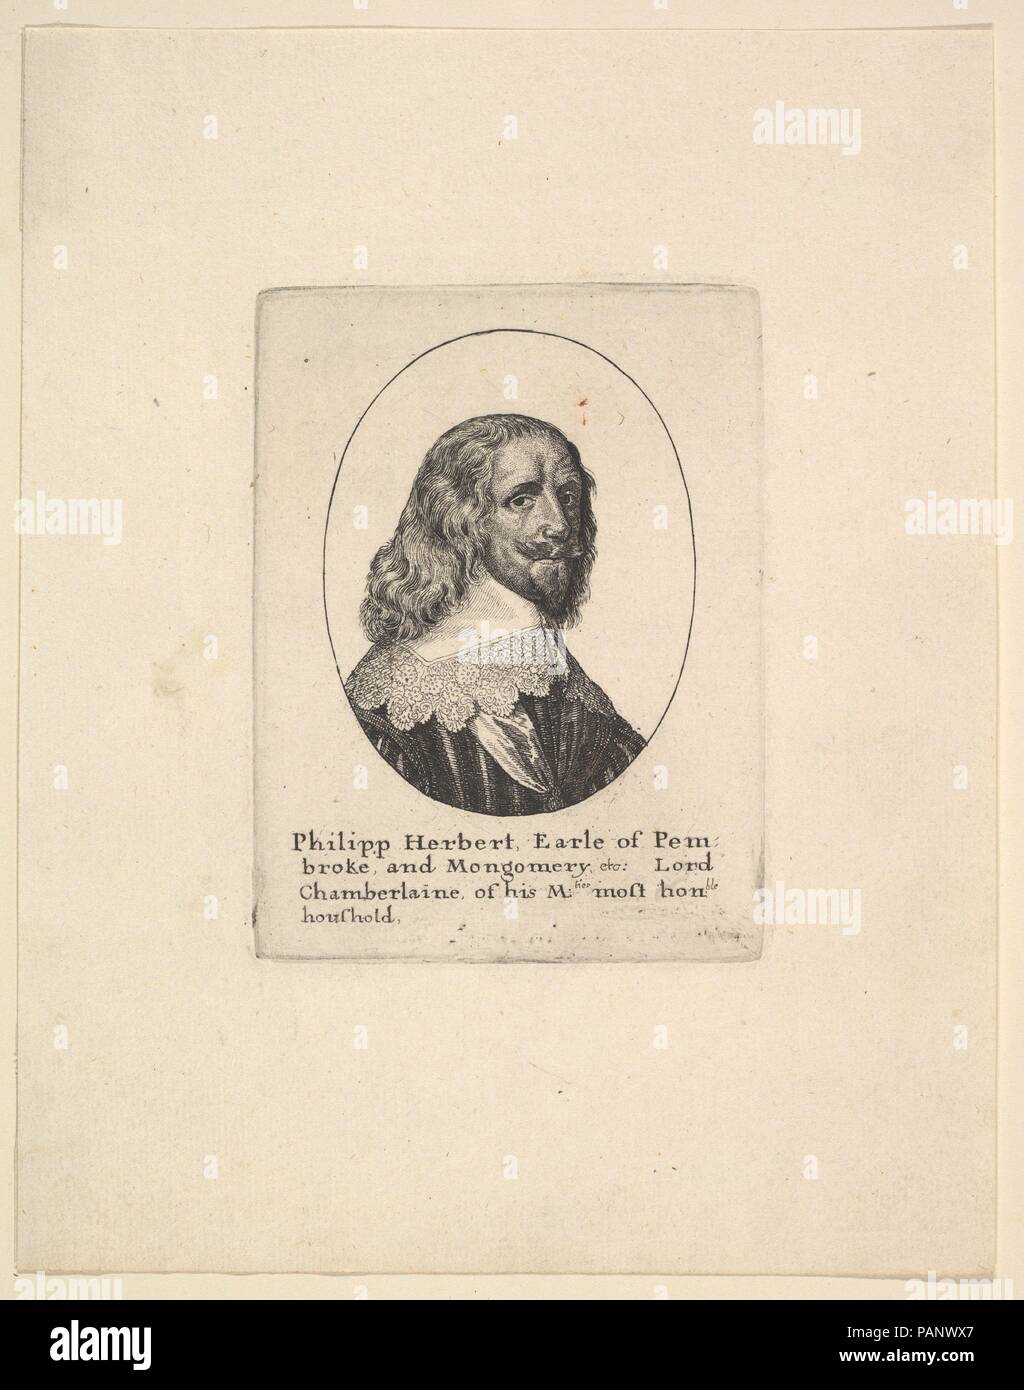 Philipp Herbert, Conte di Pembroke. Artista: Wenceslaus Hollar (boemo, Praga 1607-1677 Londra). Dimensioni: Piastra: 3 7/8 × 2 15/16 in. (9,9 × 7,5 cm) foglio: 7 3/16 × 5 11/16 in. (18,3 × 14,4 cm). Sitter: Philip Herbert, 4° Conte di Pembroke (British, 1584-1650). Data: 1625-77. Busto a destra, guardando verso la parte anteriore, con spalla-lunghezza dei capelli ondulati; indossa un ampio collare rifinito con festone di merletto e di fine sospesa da un nastro intorno al suo collo e in un ovale; dopo Anthony van Dyck. Museo: Metropolitan Museum of Art di New York, Stati Uniti d'America. Foto Stock